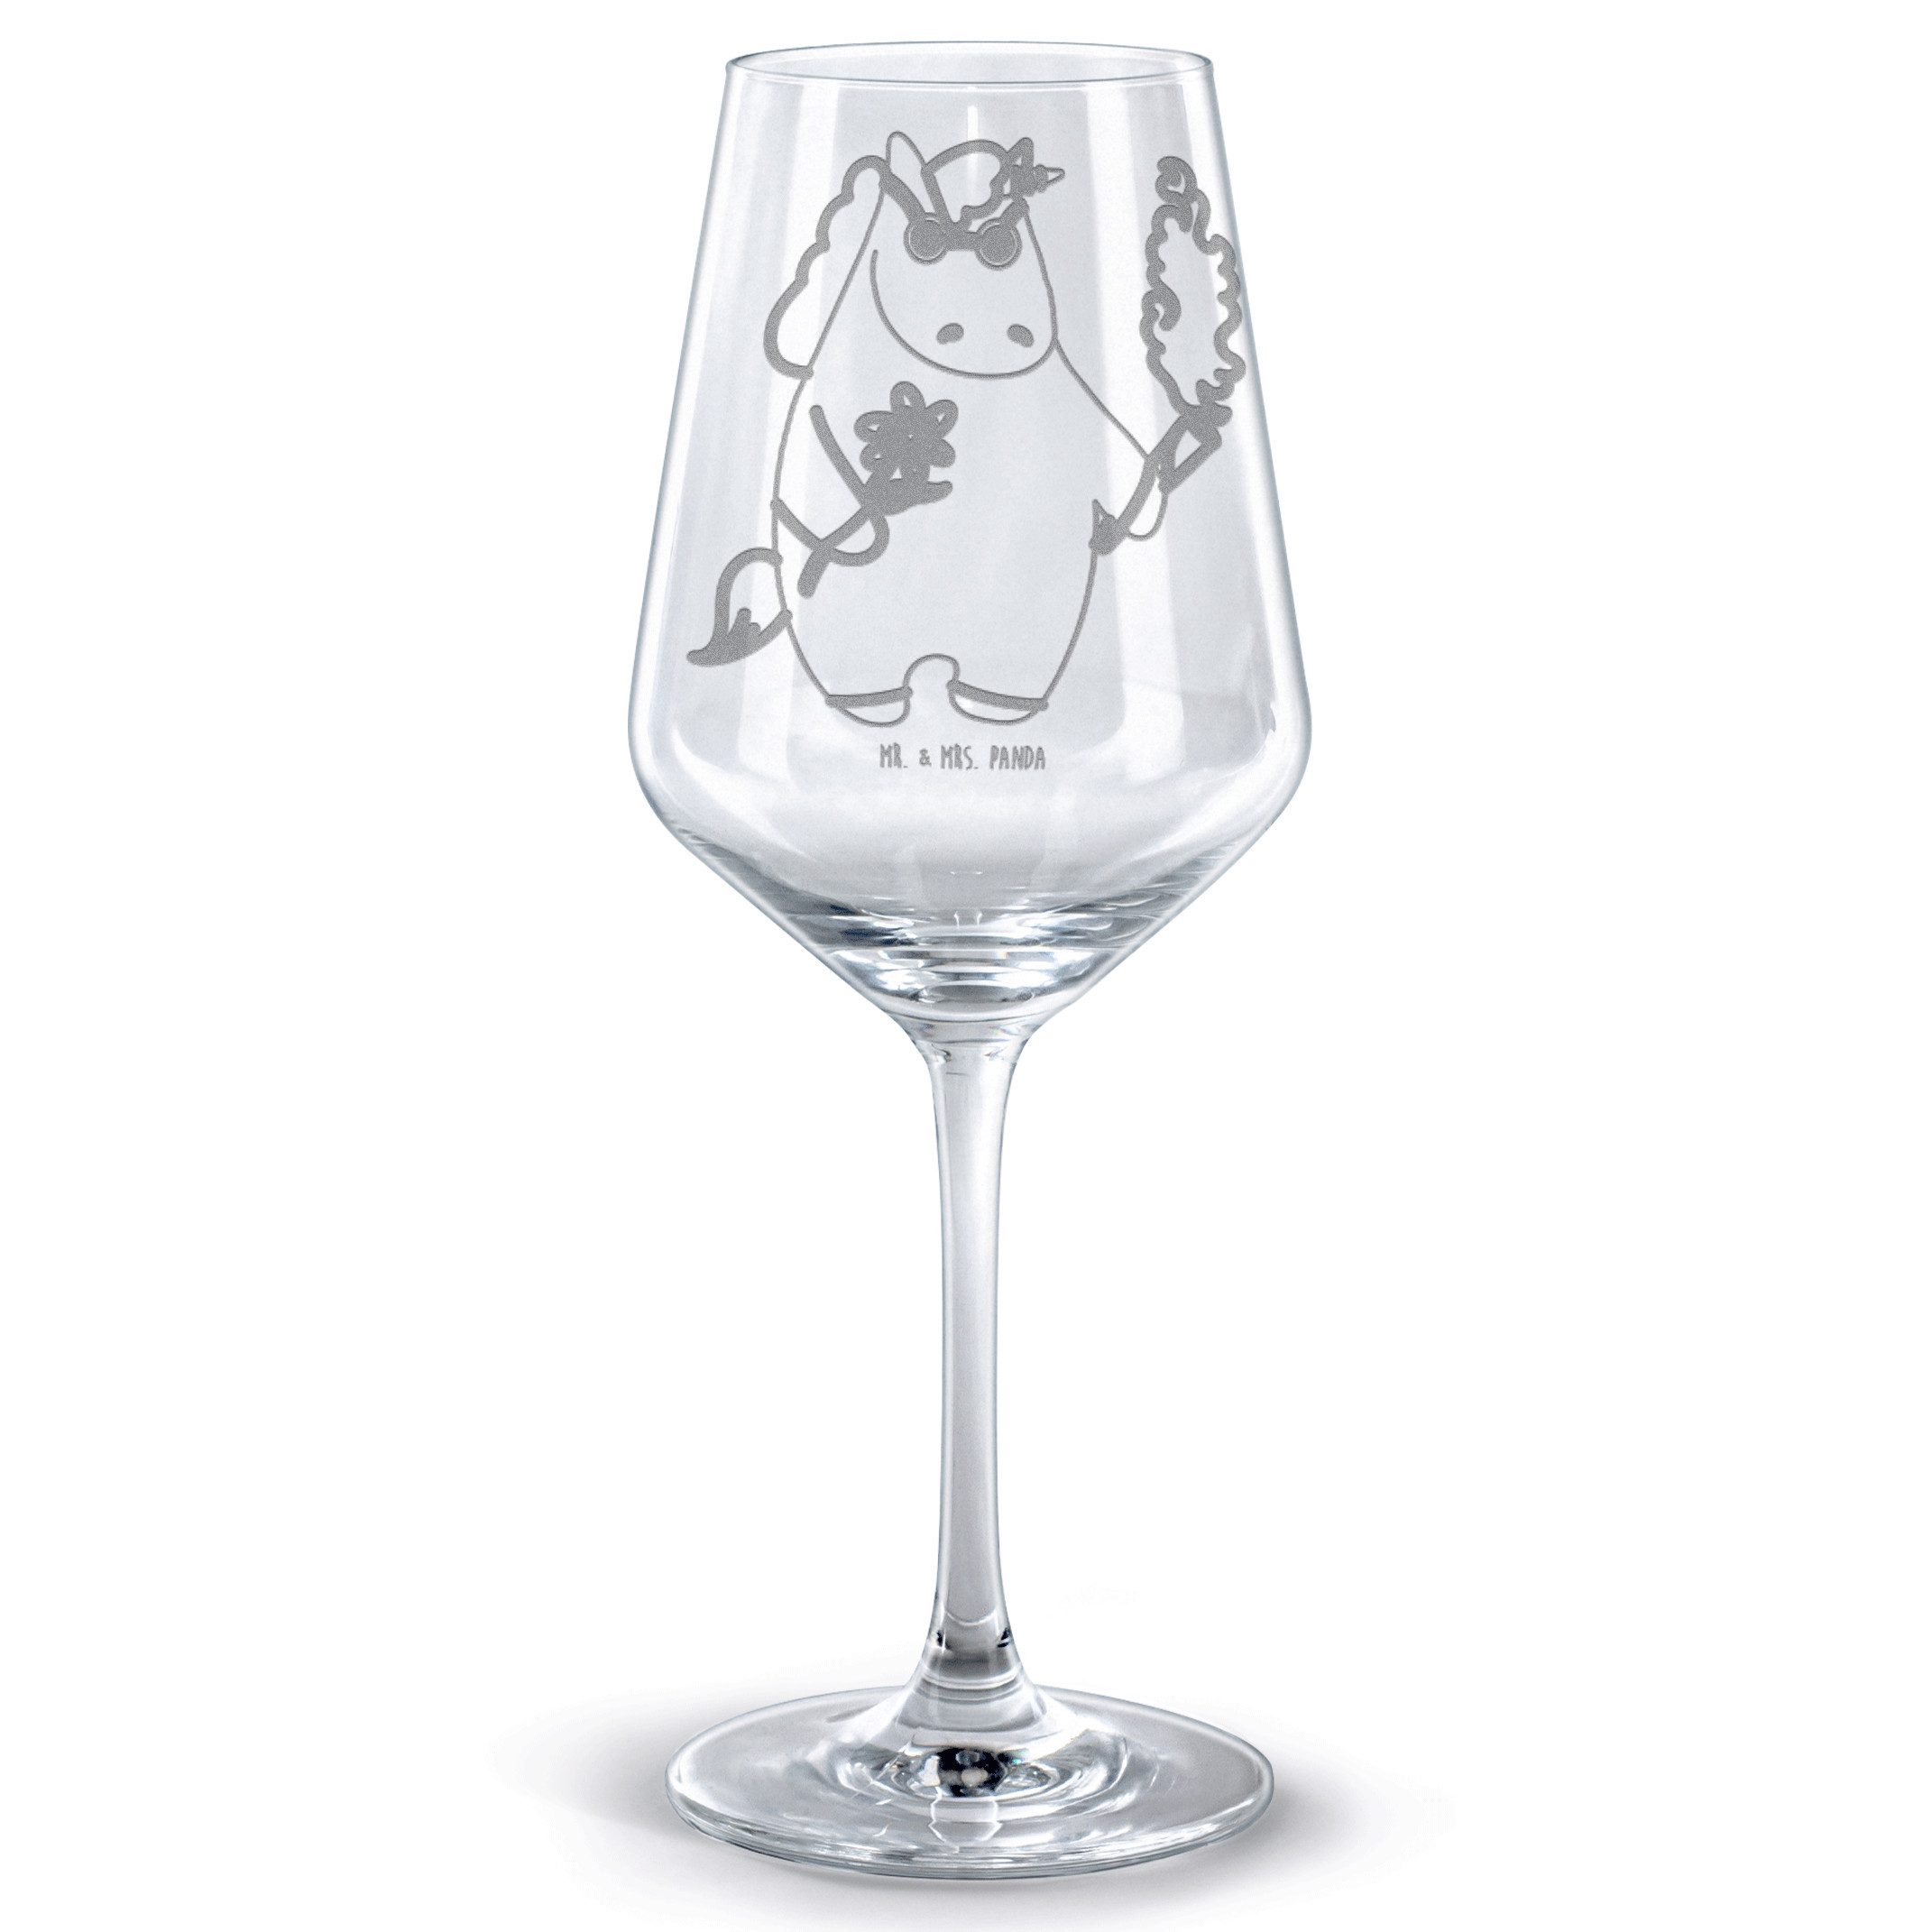 Mr. & Mrs. Panda Rotweinglas Einhorn Woodstock - Transparent - Geschenk, Alkohol, Spülmaschinenfes, Premium Glas, Luxuriöse Gravur